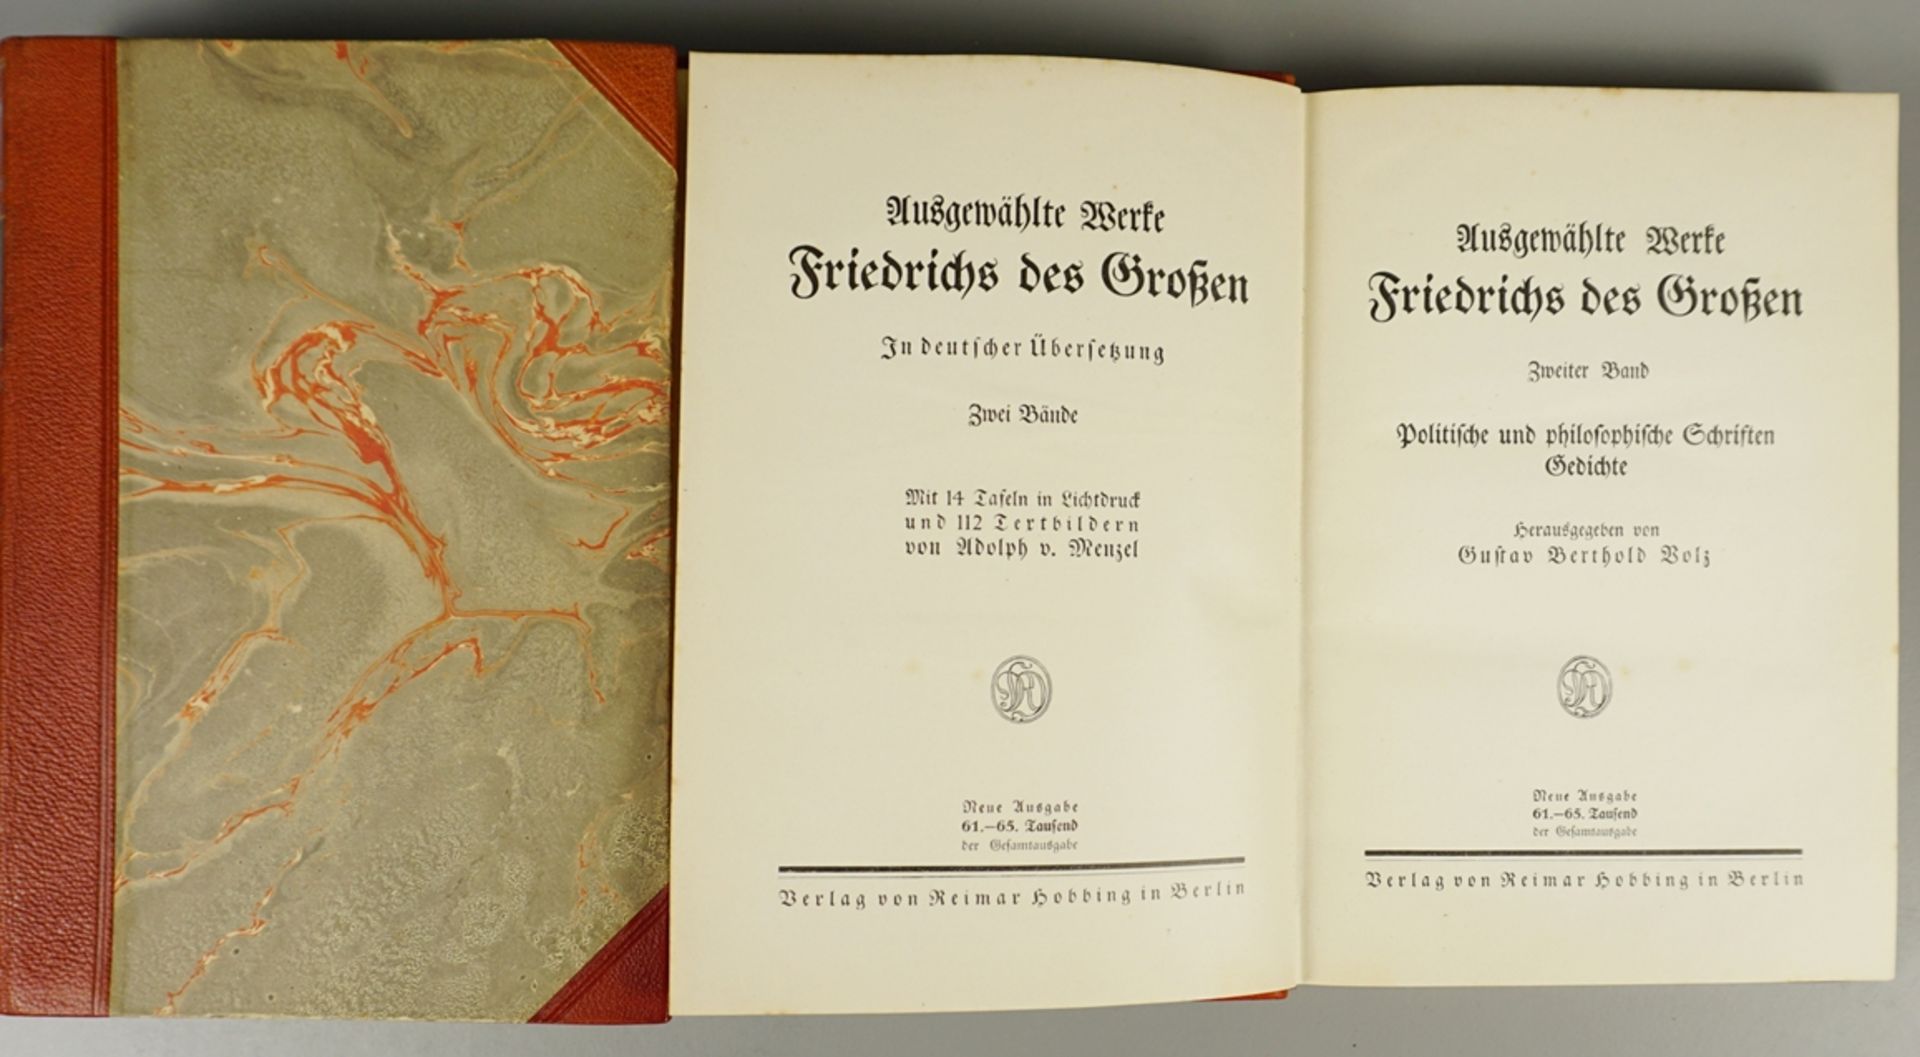 3 Bde., Friedrich der Große, Verlag von Reimar Hobbing, Berlin, um 1910 - Image 2 of 2